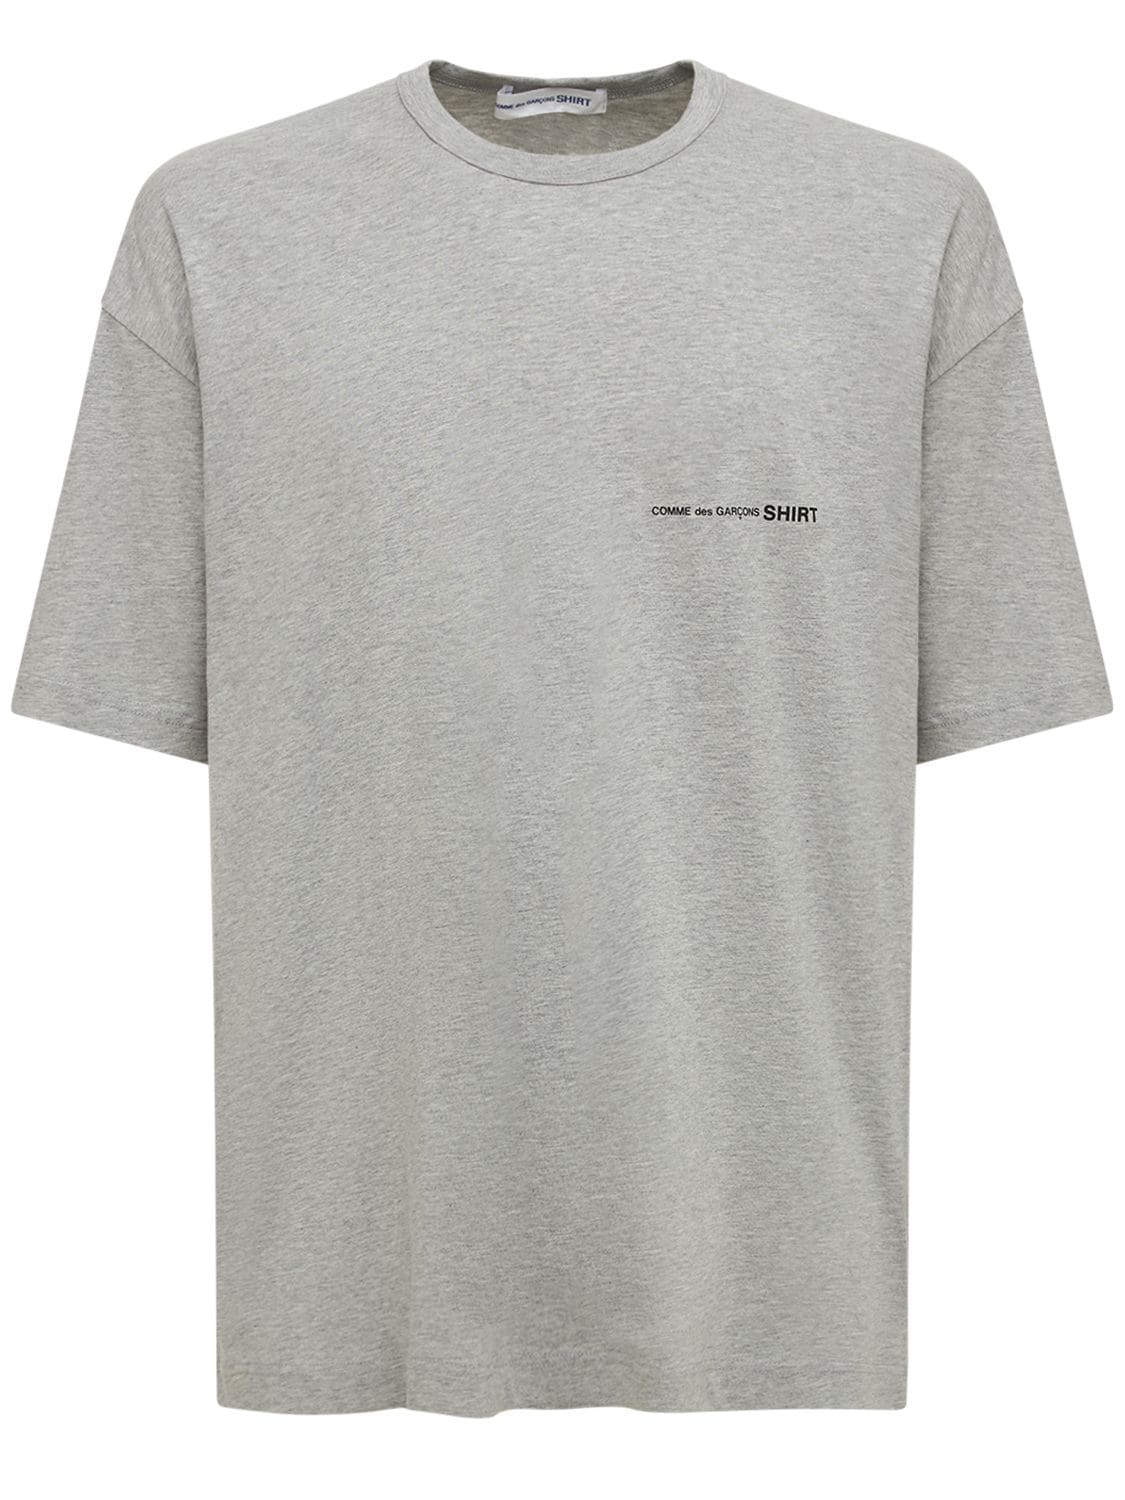 T-shirt Aus Baumwolljersey Mit Logodruck - COMME DES GARÇONS SHIRT - Modalova